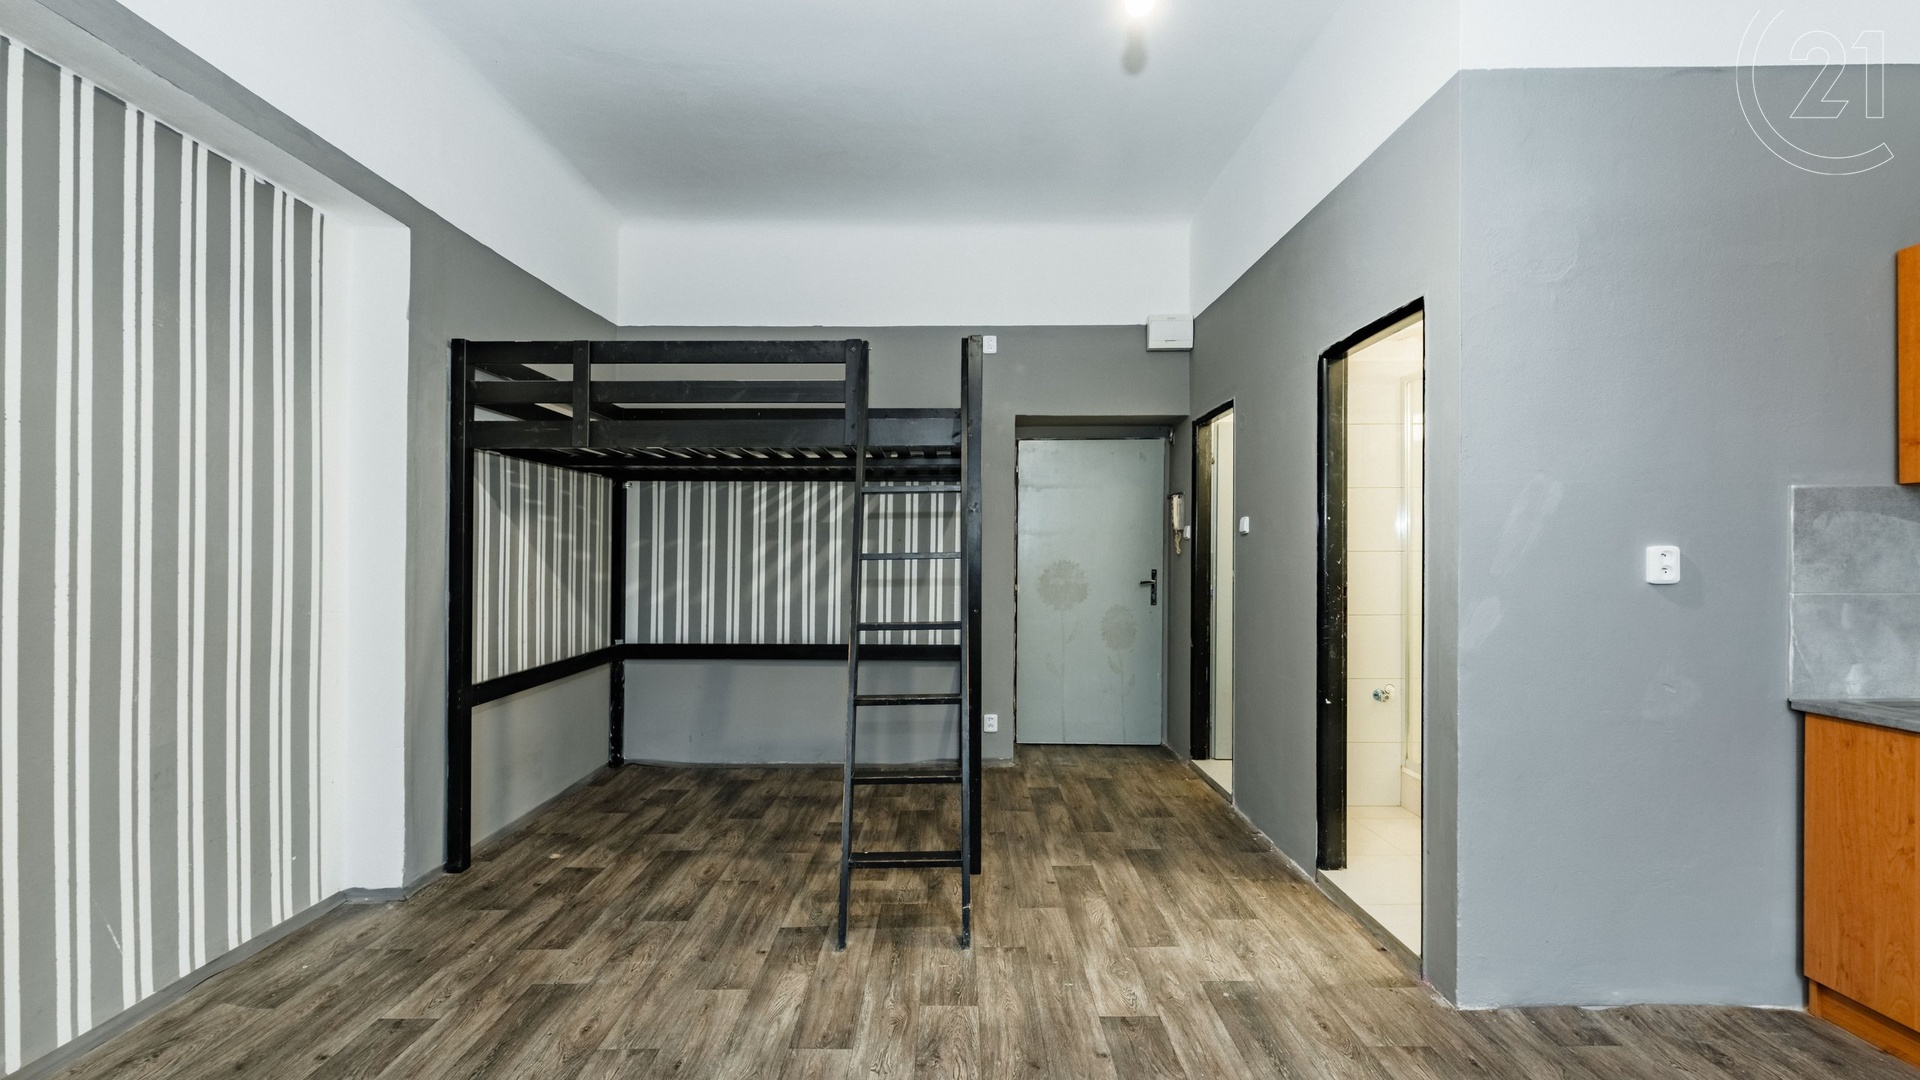 Dlouhodobý pronájem bytu 1+0, 28 m², v centru města Tábora - nám. F. Křižíka